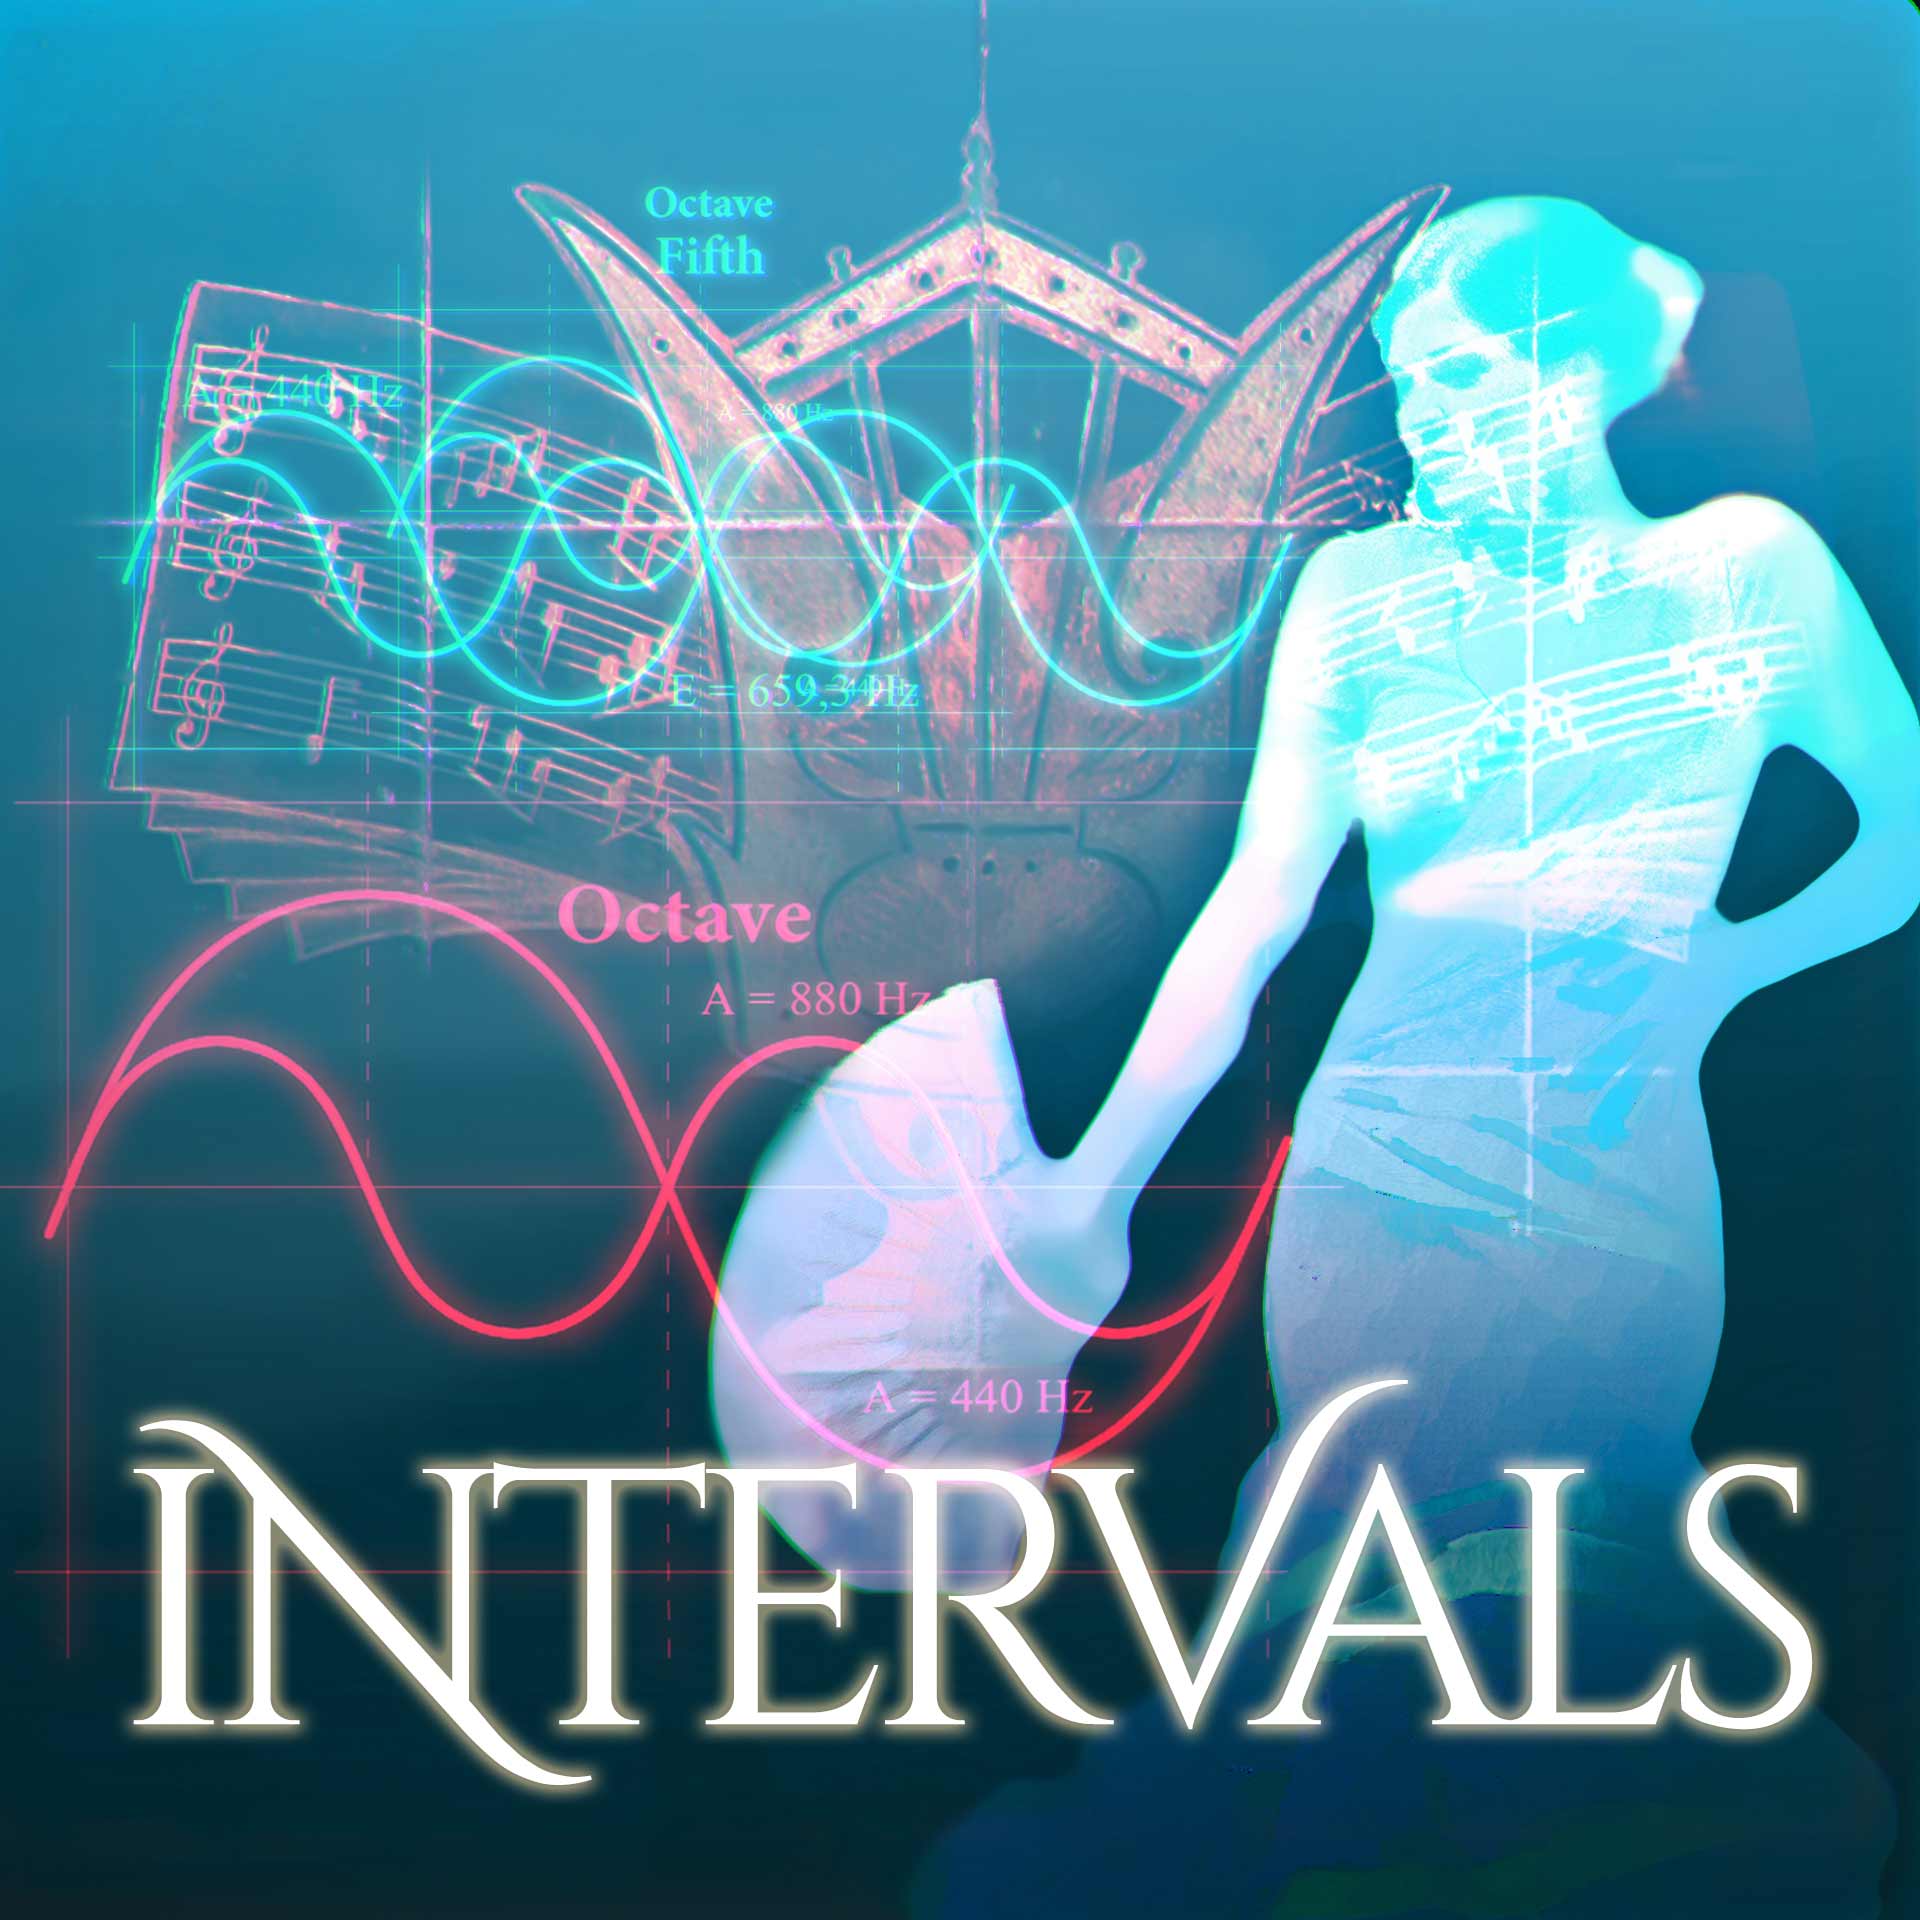 Intervals